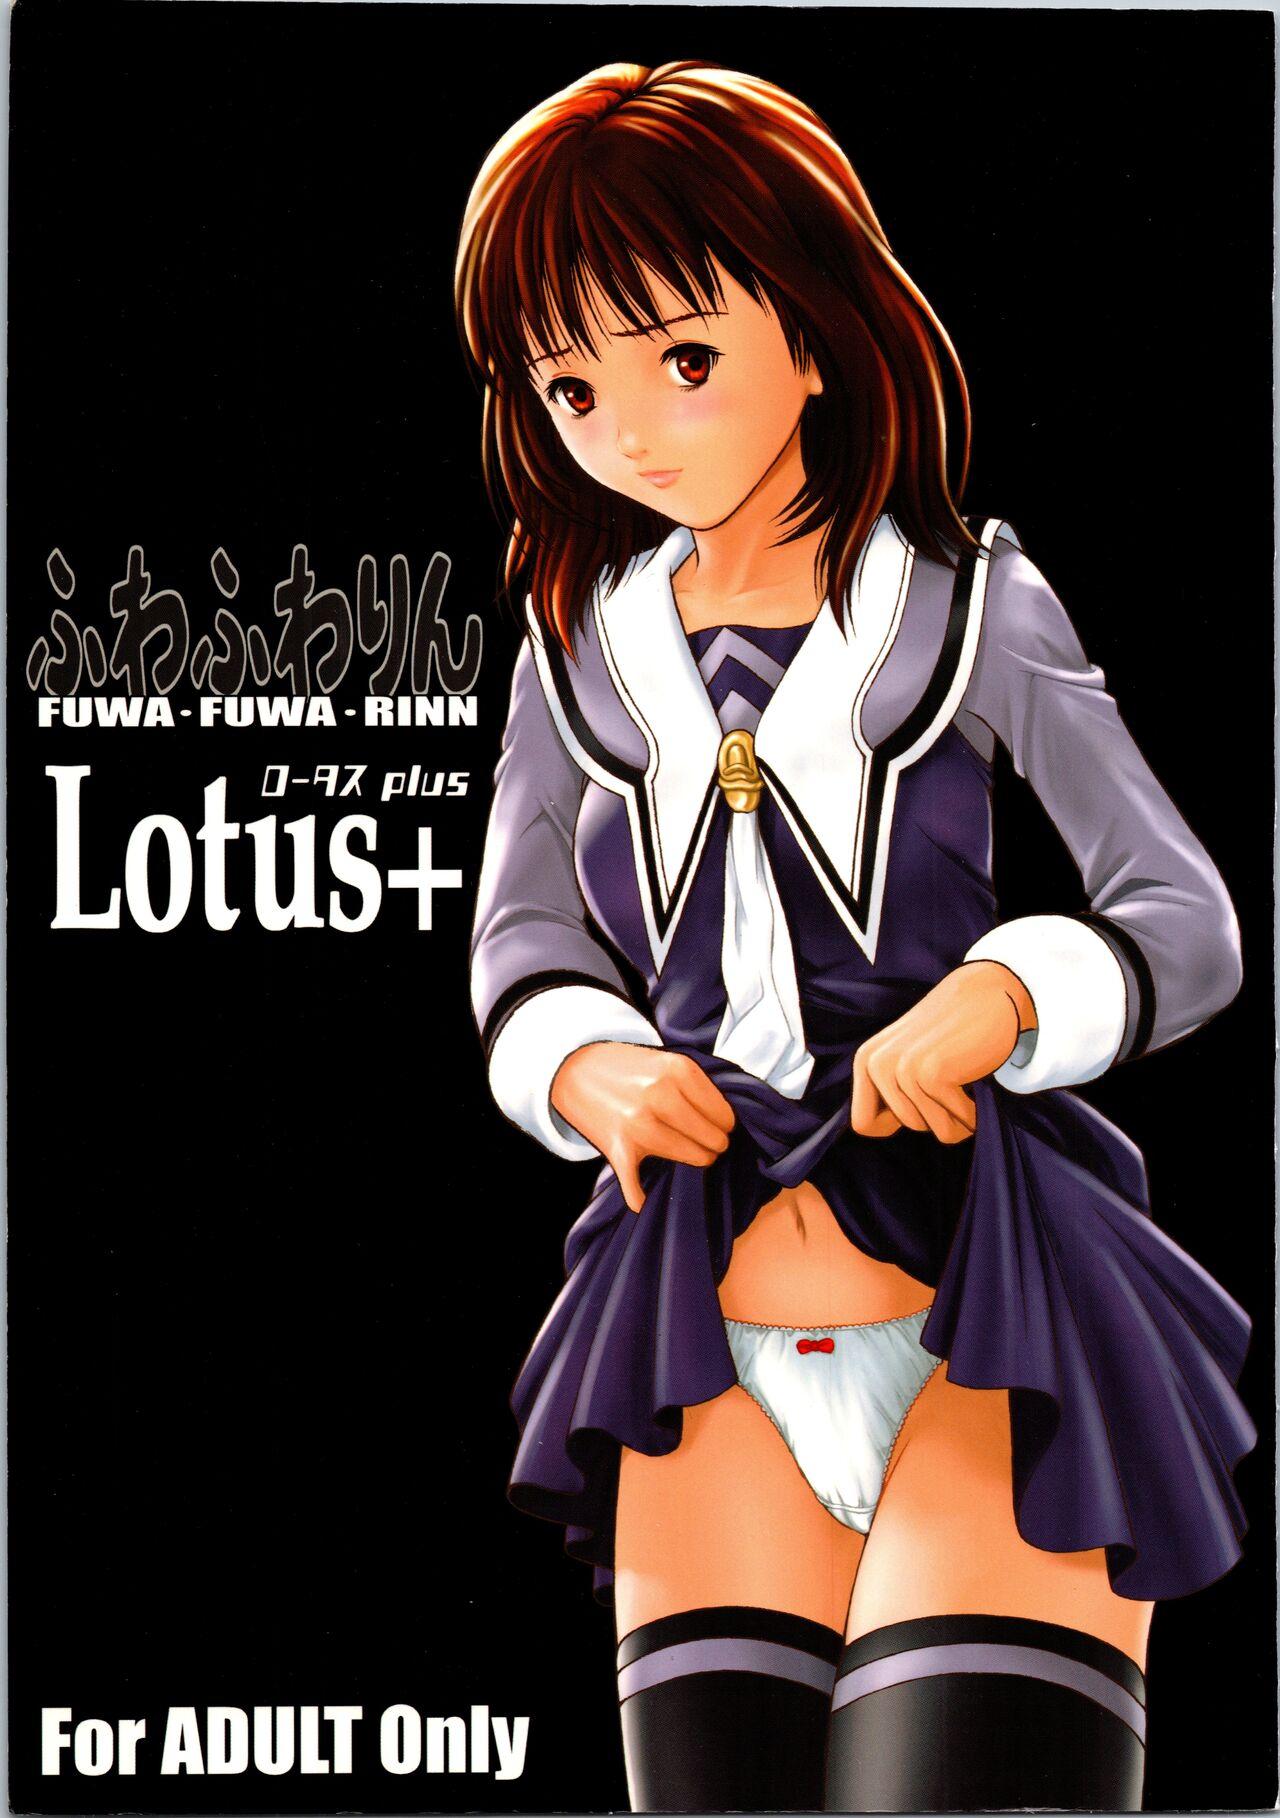 Fuwafuwarin Lotus+ 0